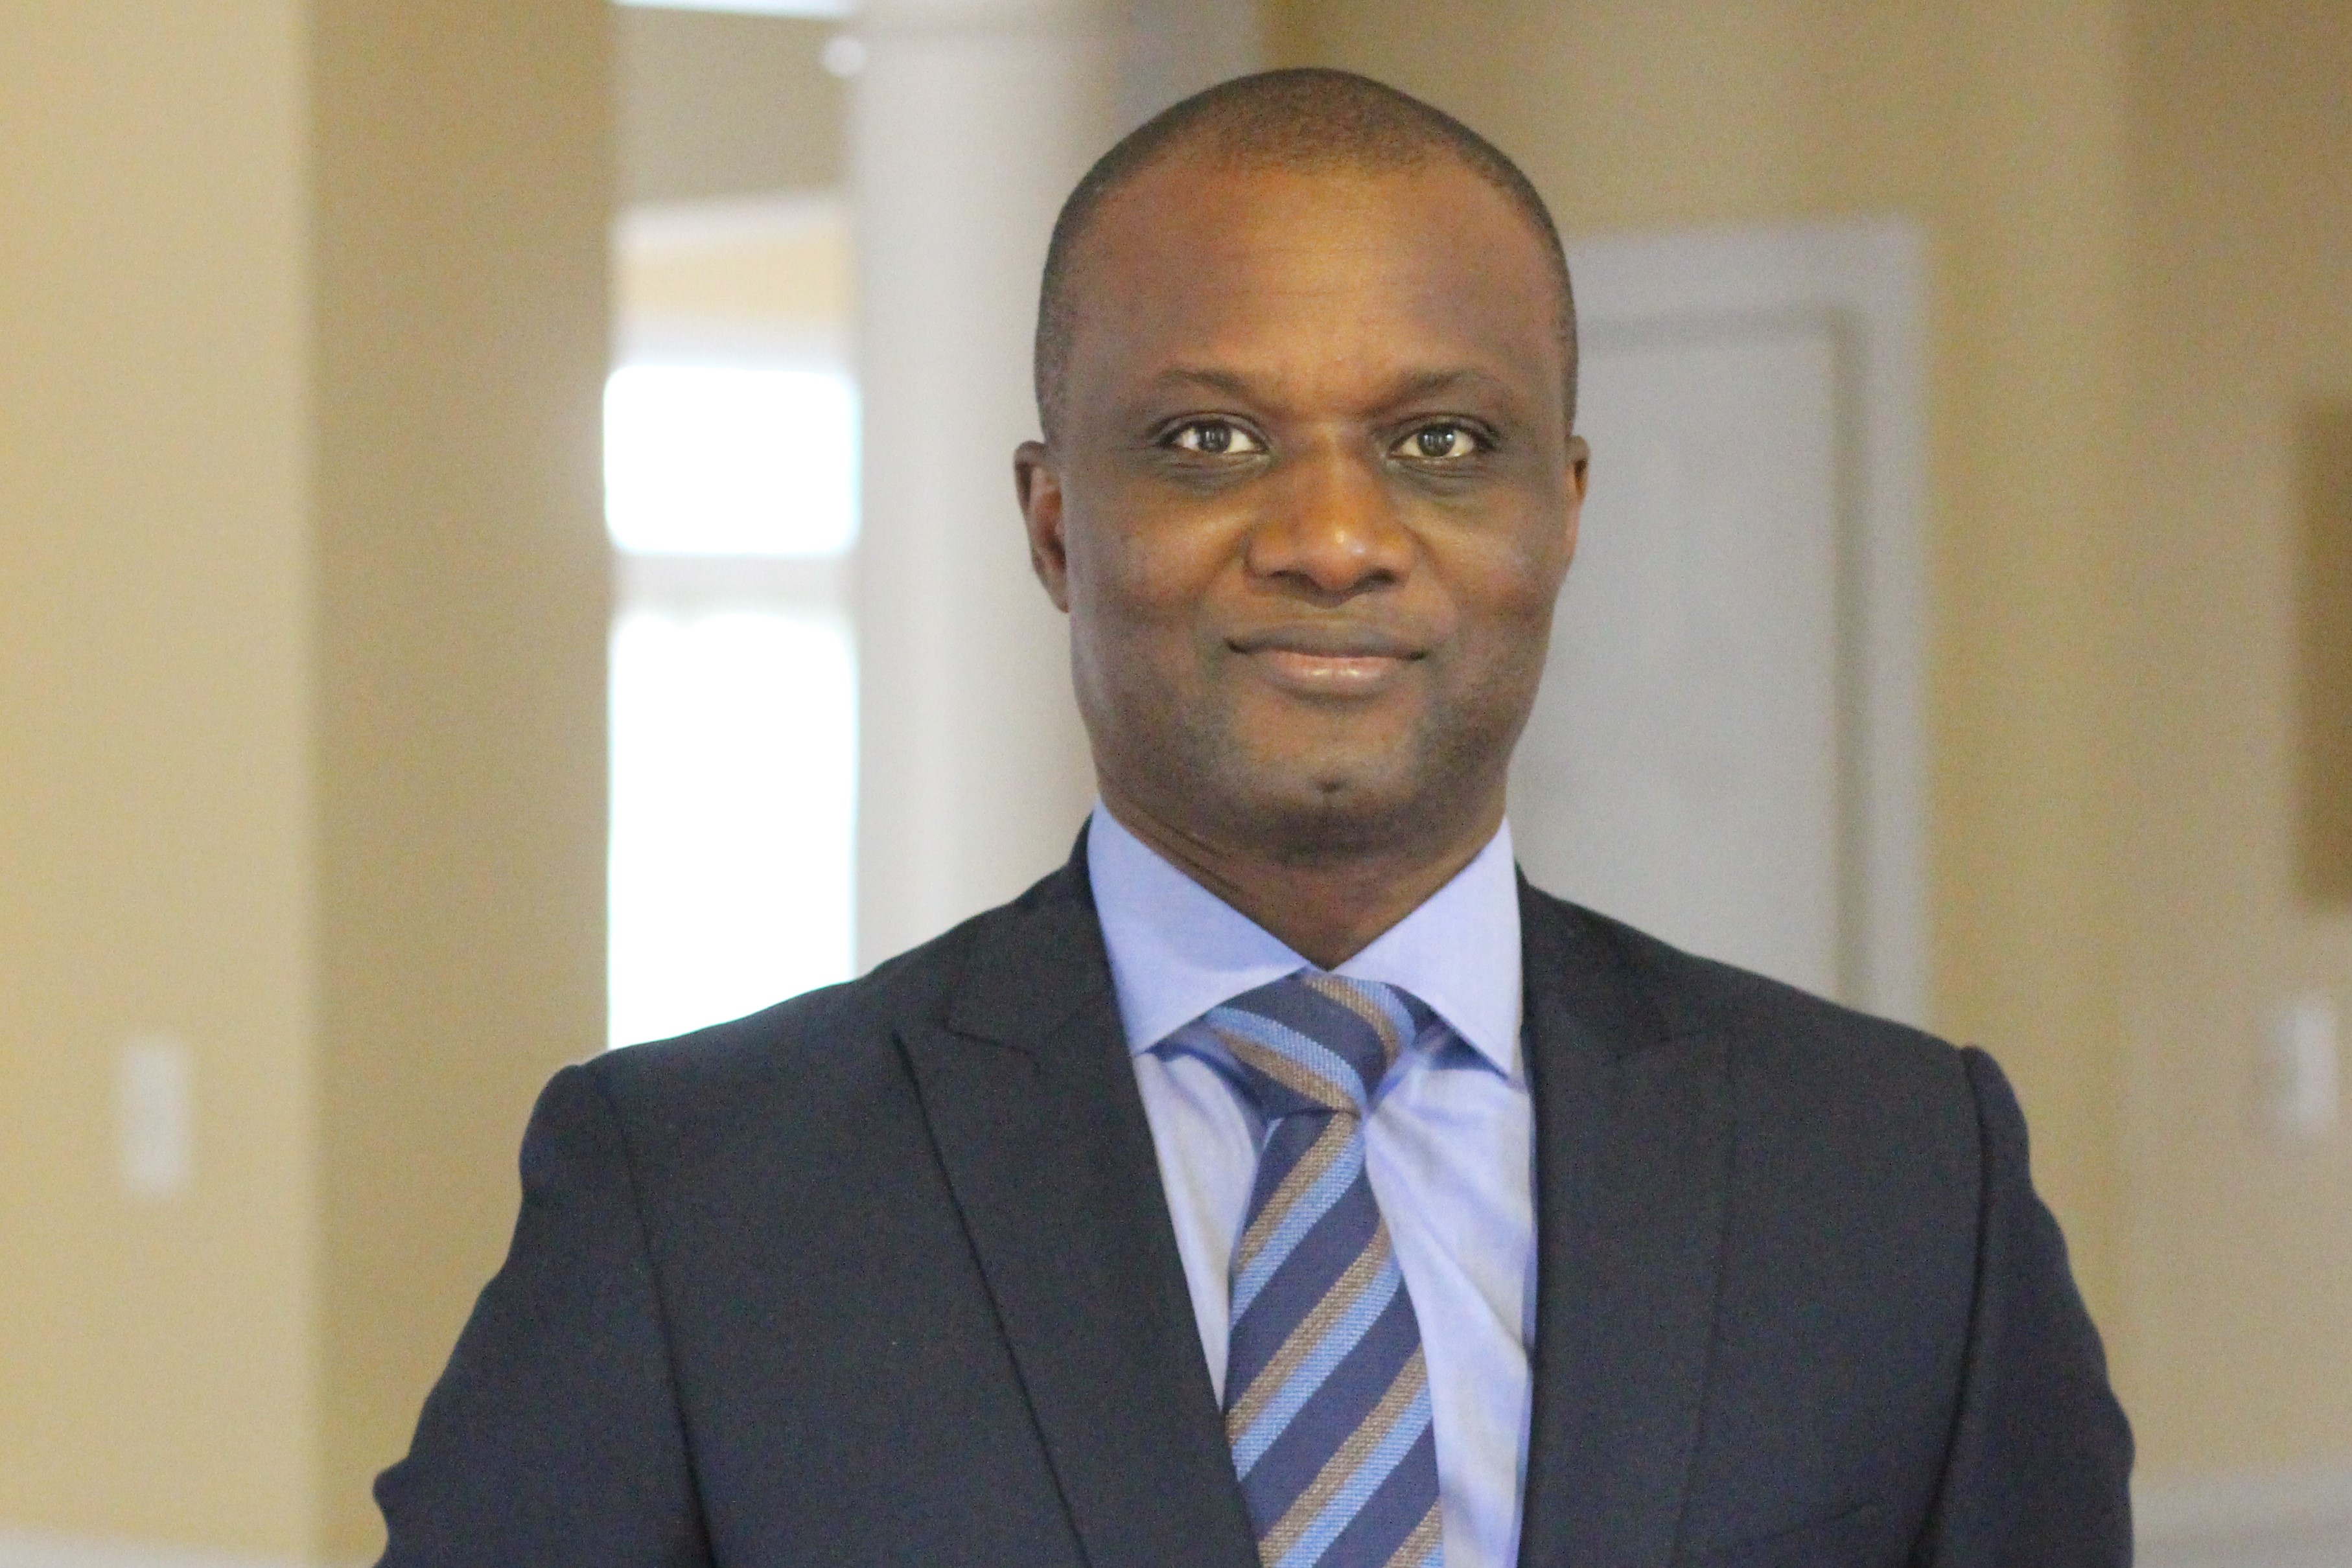 BCEAO: Sortie ratée du Gouverneur Koné sur RFI (Par Dr Abdourahmane SARR)